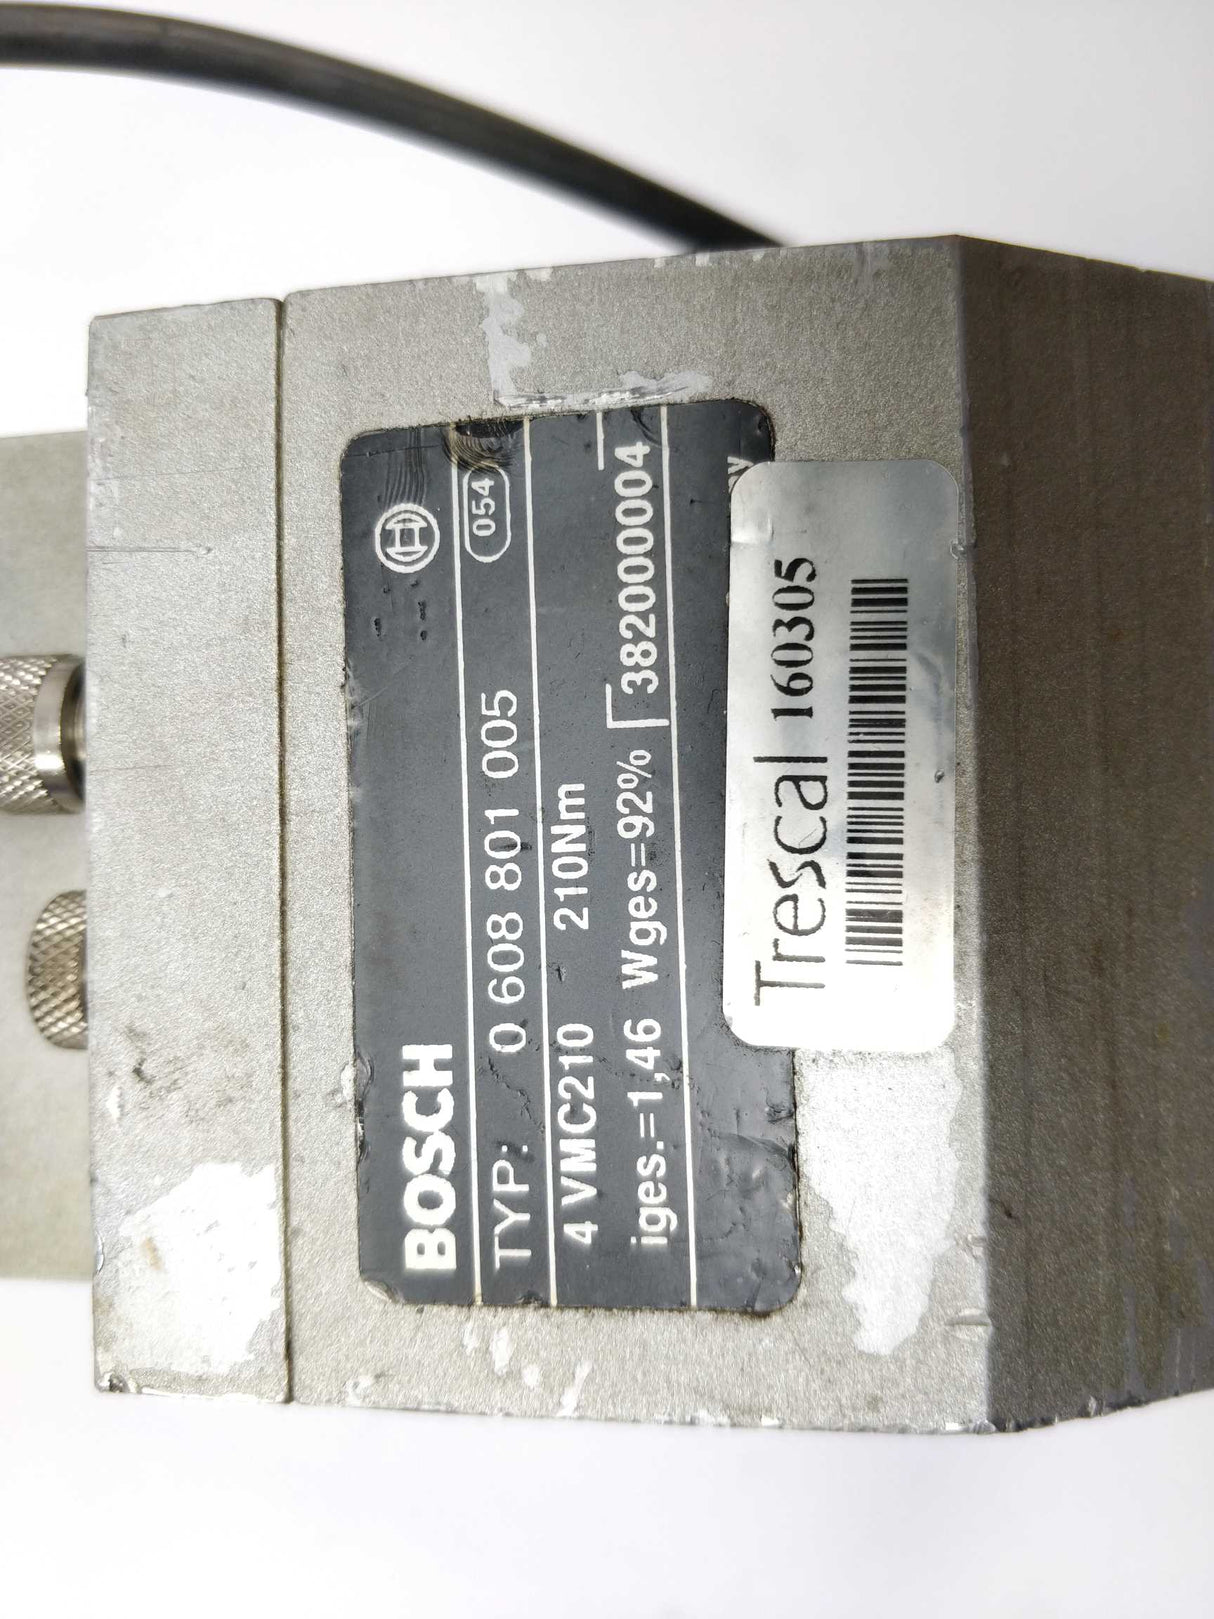 Bosch 0608801005 4VMC210 0608801008 4AVG